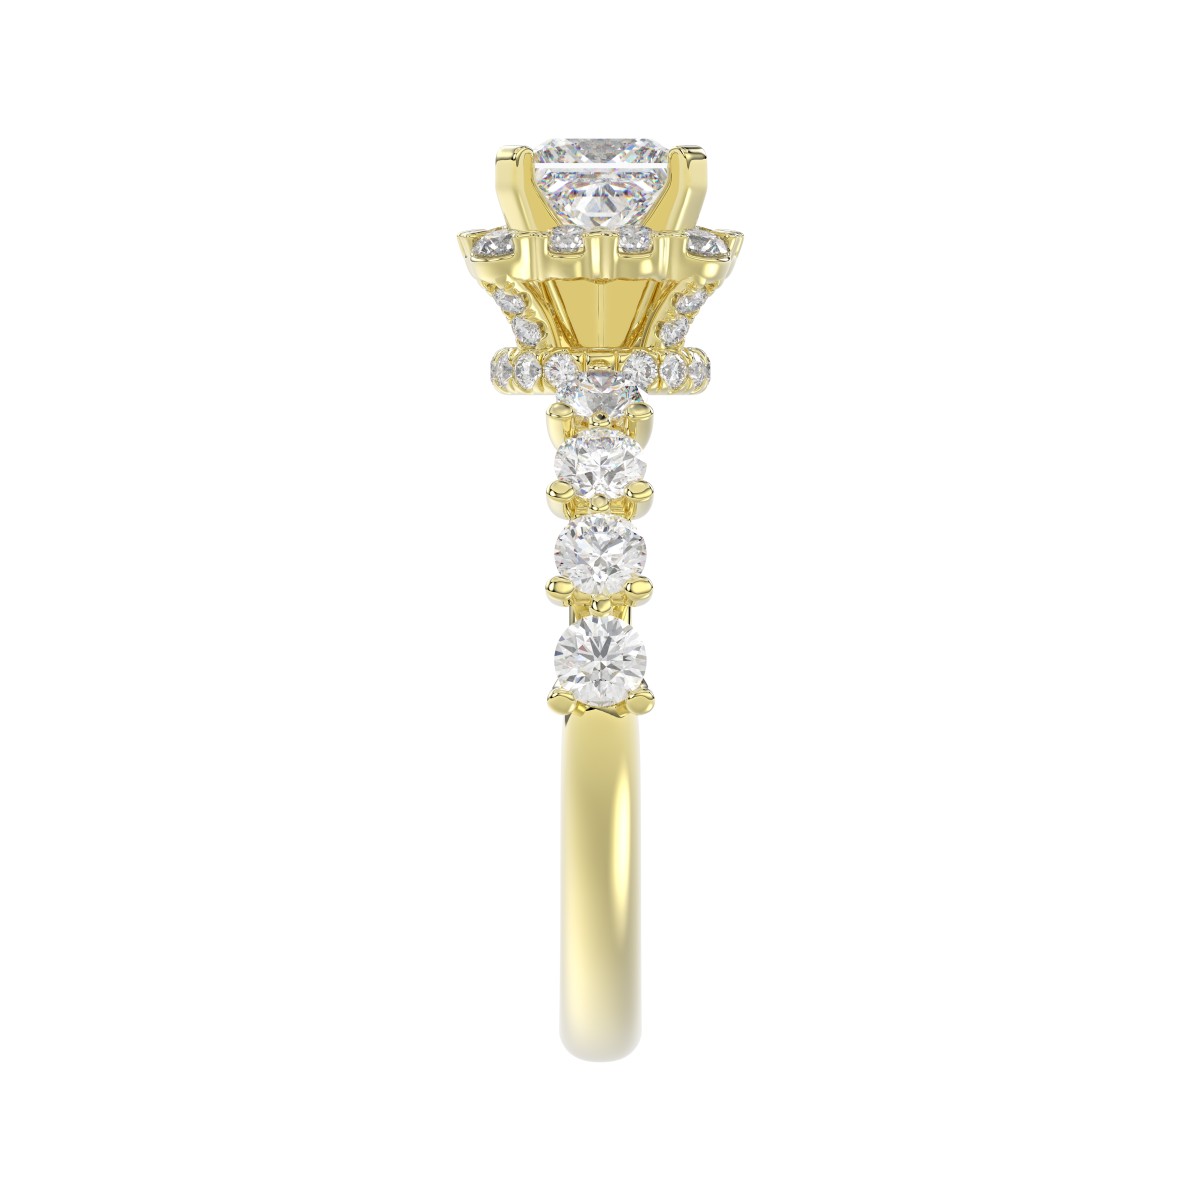 18K YELLOW GOLD 2 1/2CT ROUND/PRINCESS DIAMOND SEMI MOUNT LADIES RING (CENTER STONE PRINCESS DIAMOND 1.00CT)